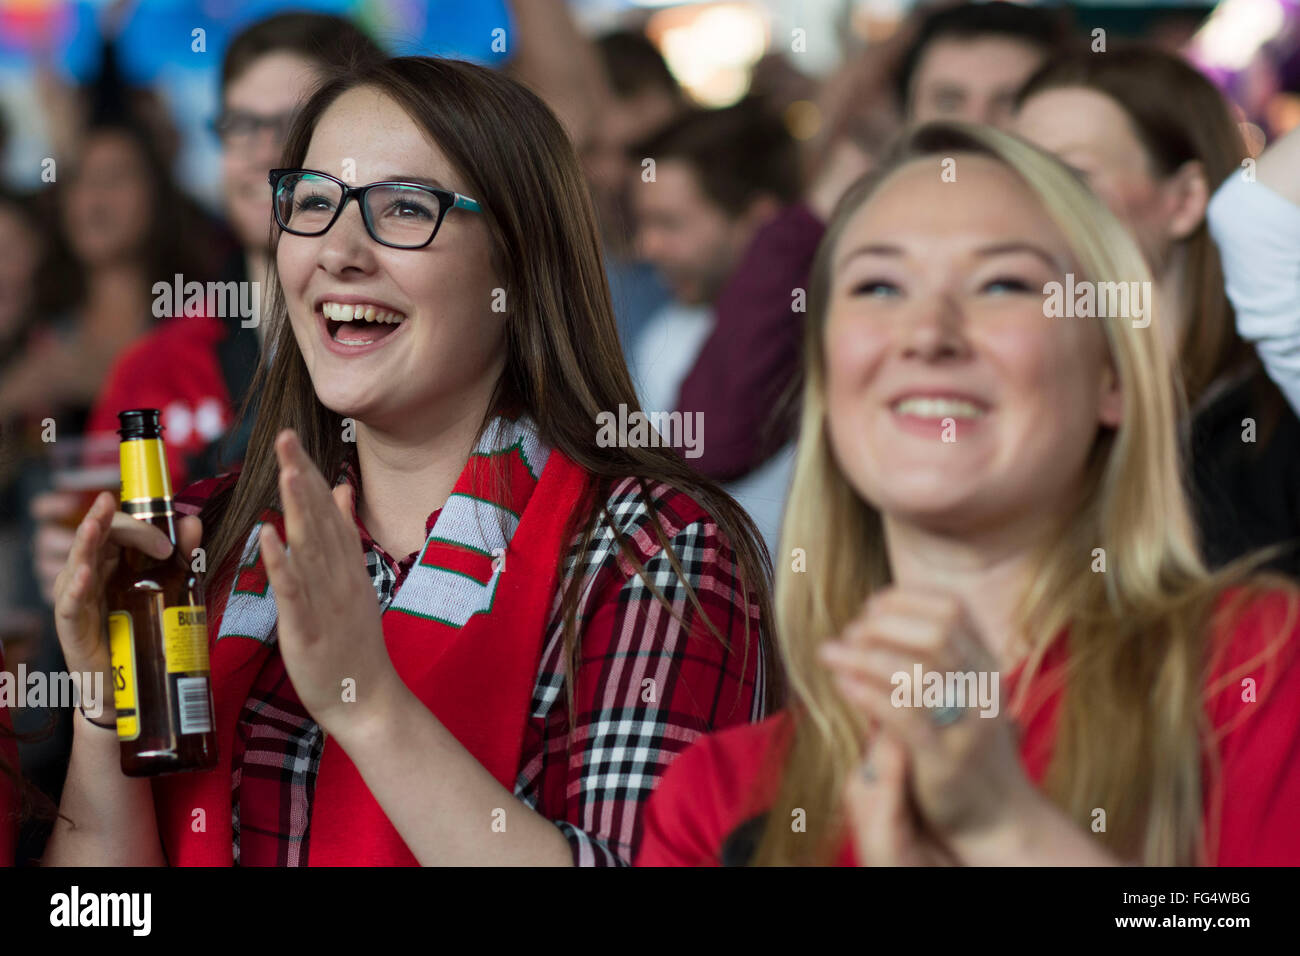 Appassionato del Galles rugby fan di guardare il Galles durante la Coppa del Mondo di Rugby 2015 in Cardiff Fan Zone a Cardiff, nel Galles del Sud. Foto Stock